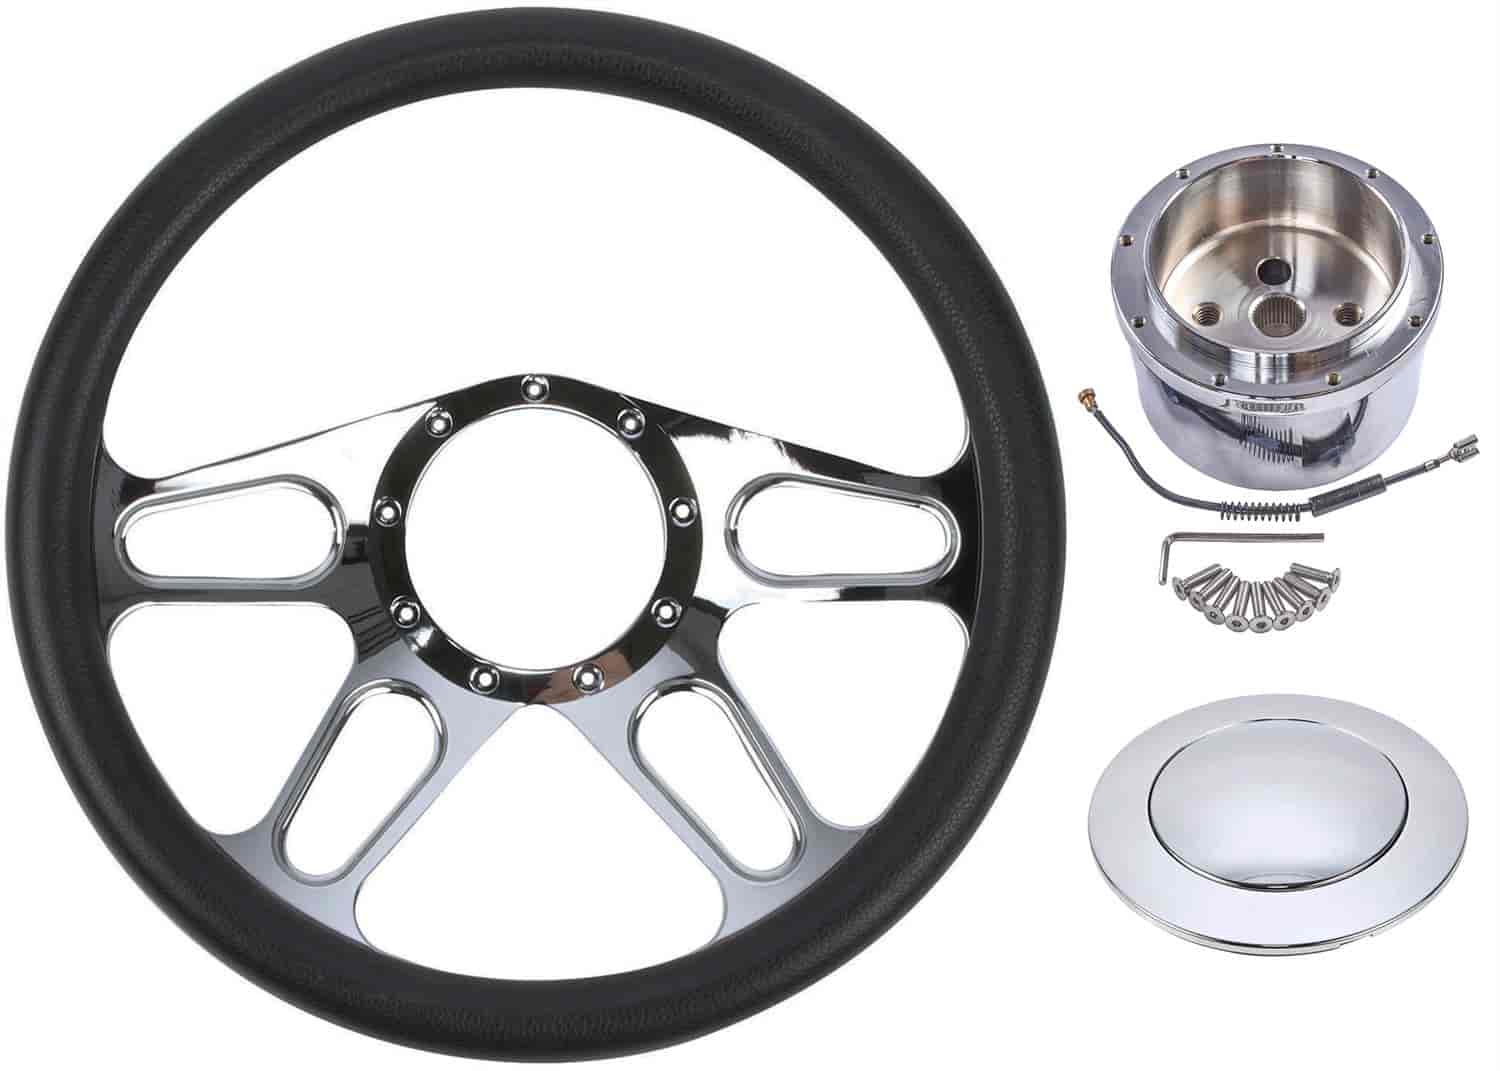 Chrome-Plated Billet Aluminum 14 in. Steering Wheel Kit [Autocross Spoke Design]